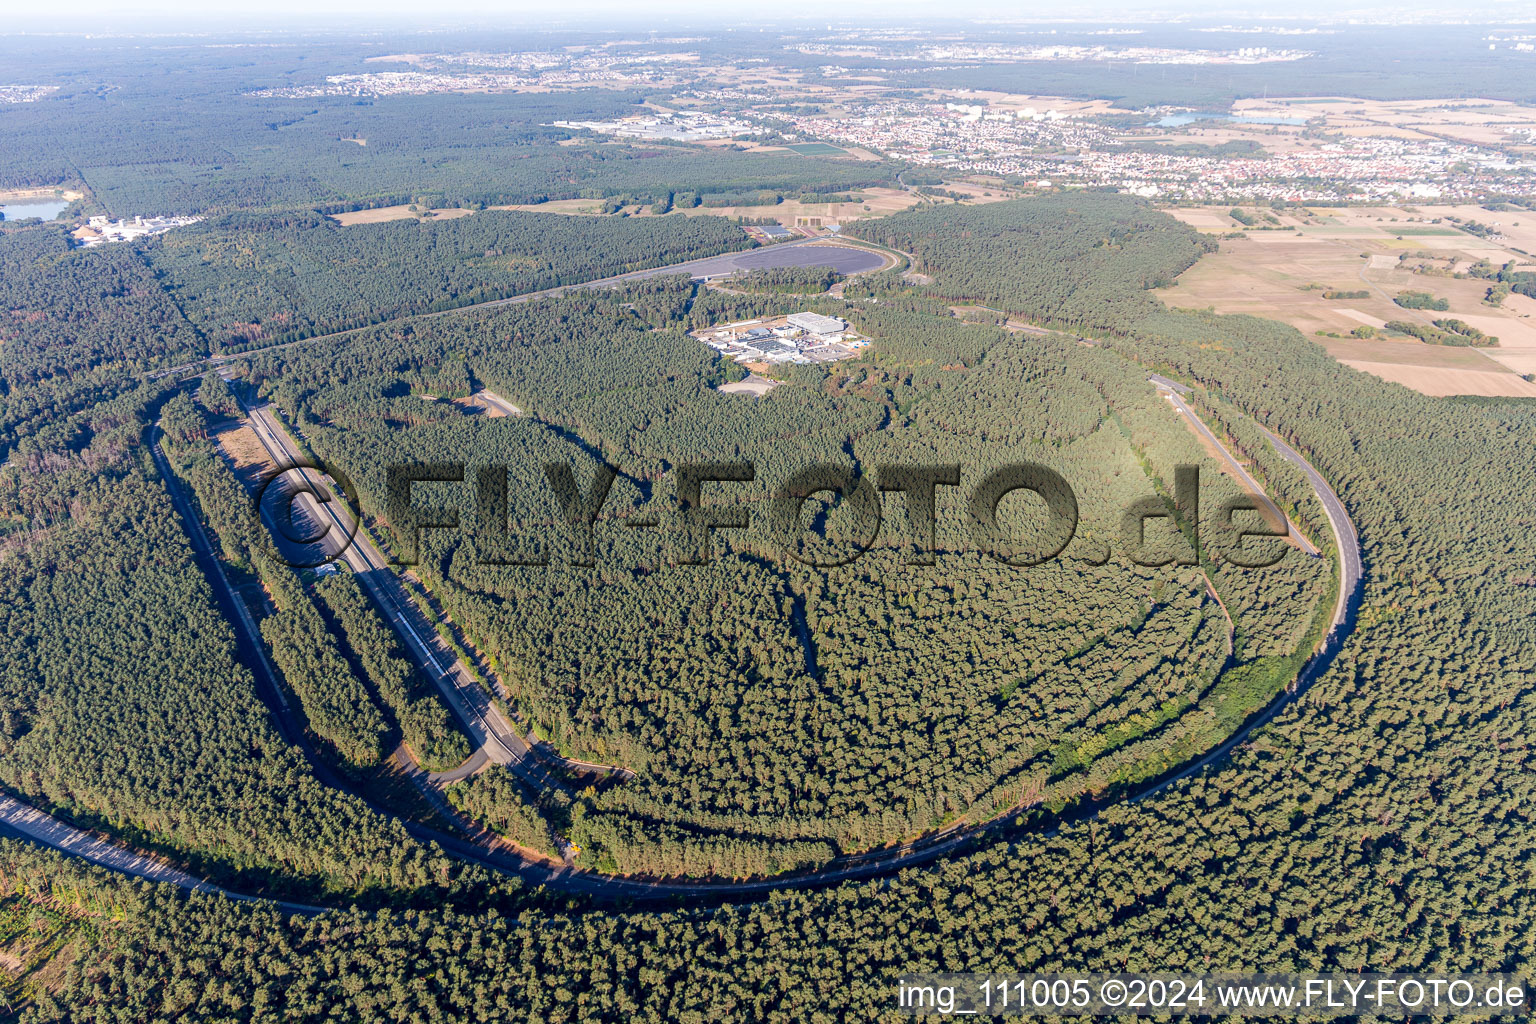 Luftaufnahme von Rodgau, Opel Test Center im Bundesland Hessen, Deutschland